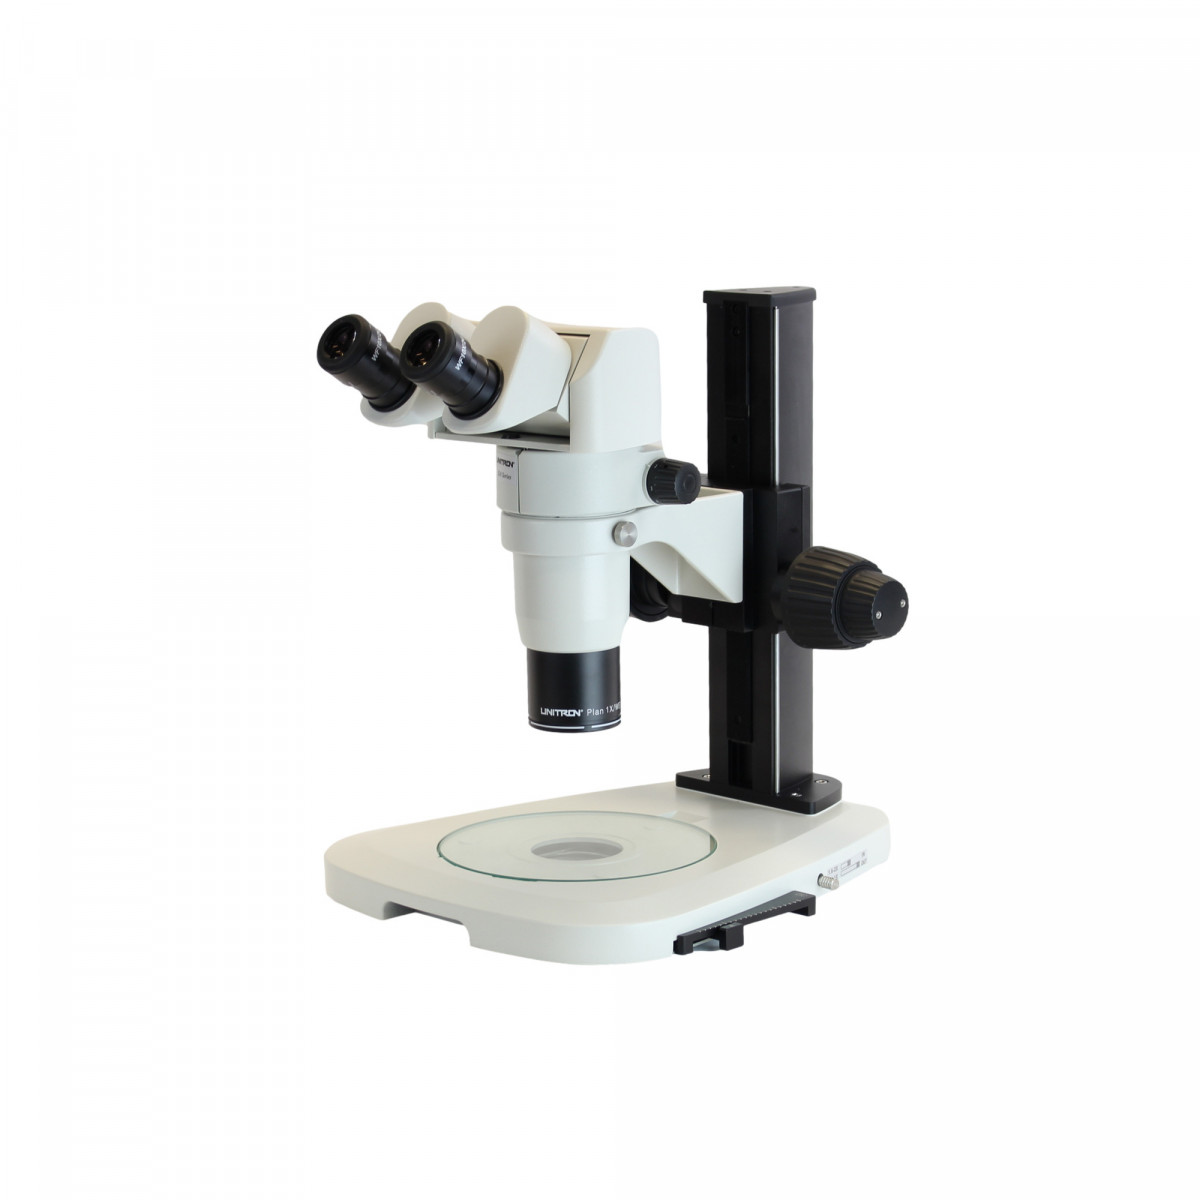 Oblique Illumination Contrast stand shown with UNITRON Z10 microscope